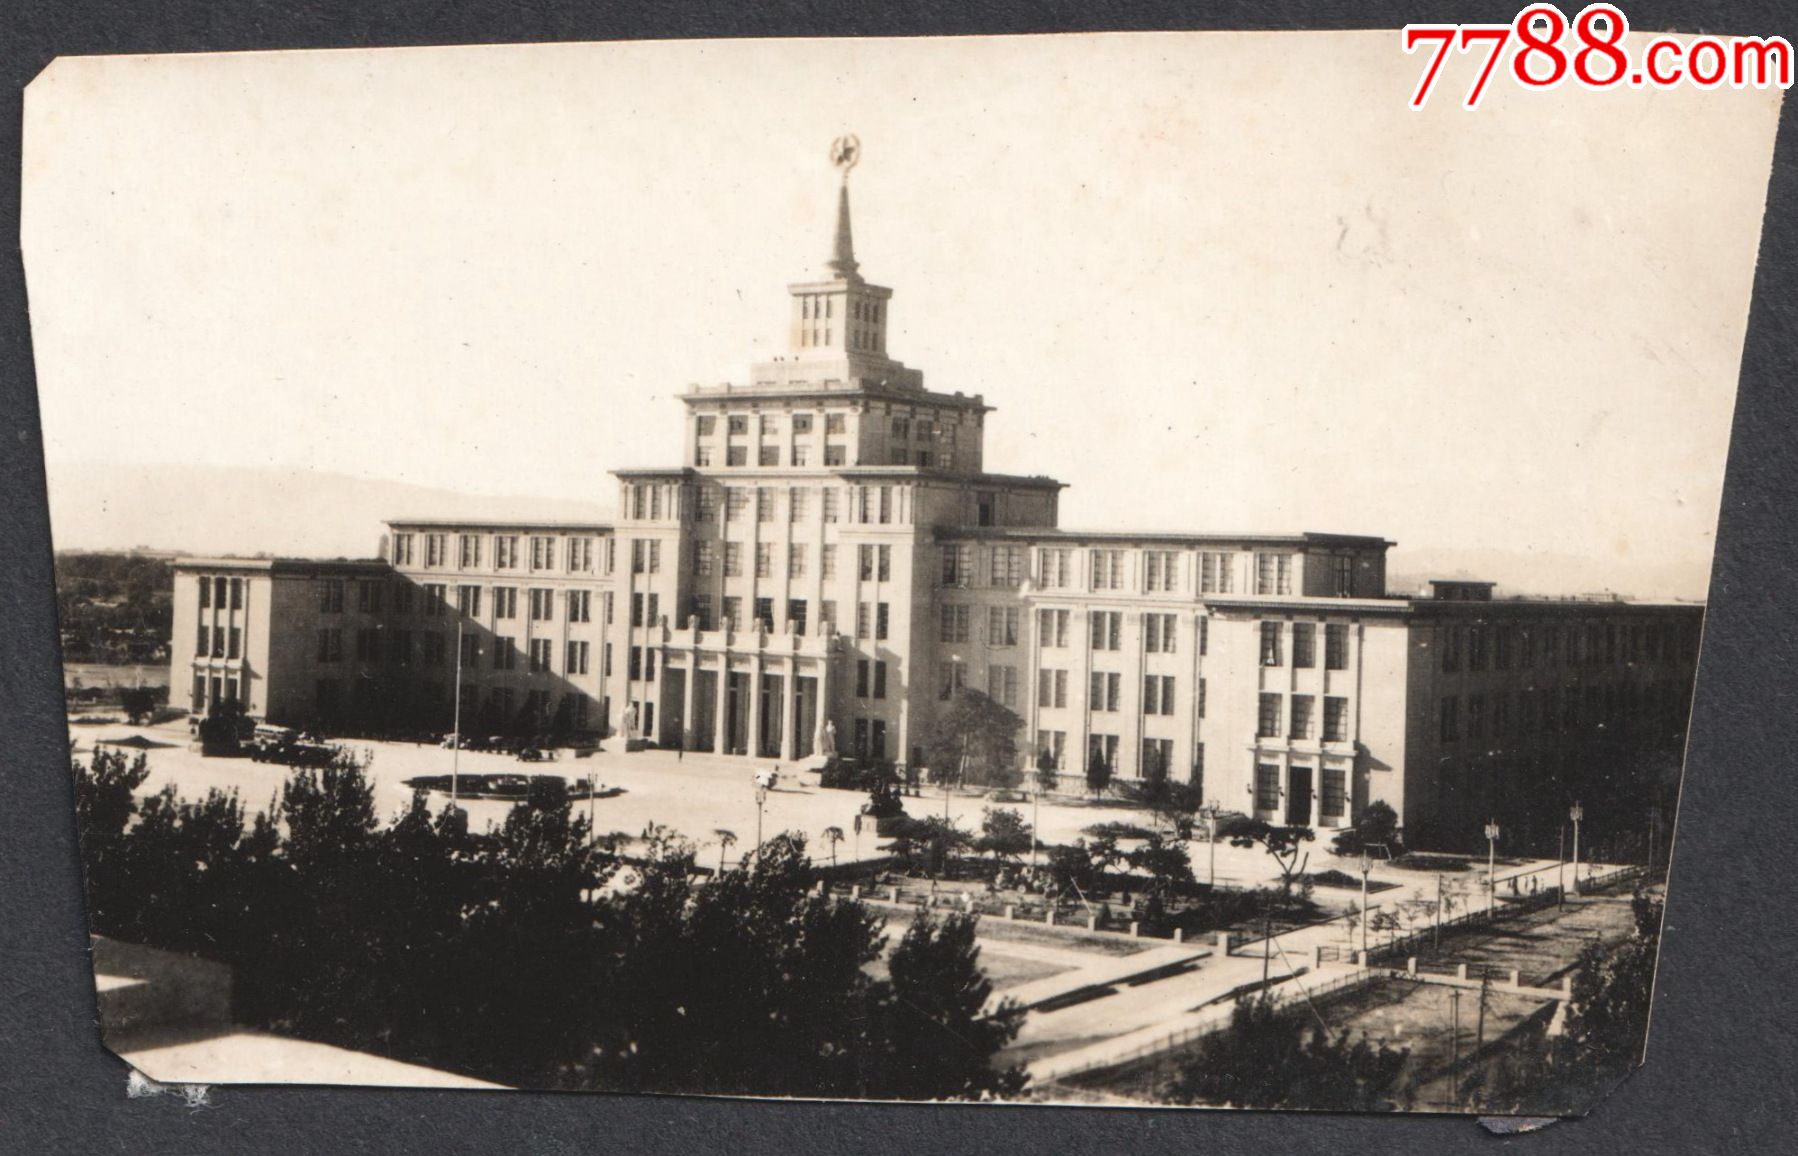 五六十年代相对少见的北京地标建筑老照片11张电报大楼前的老式公共